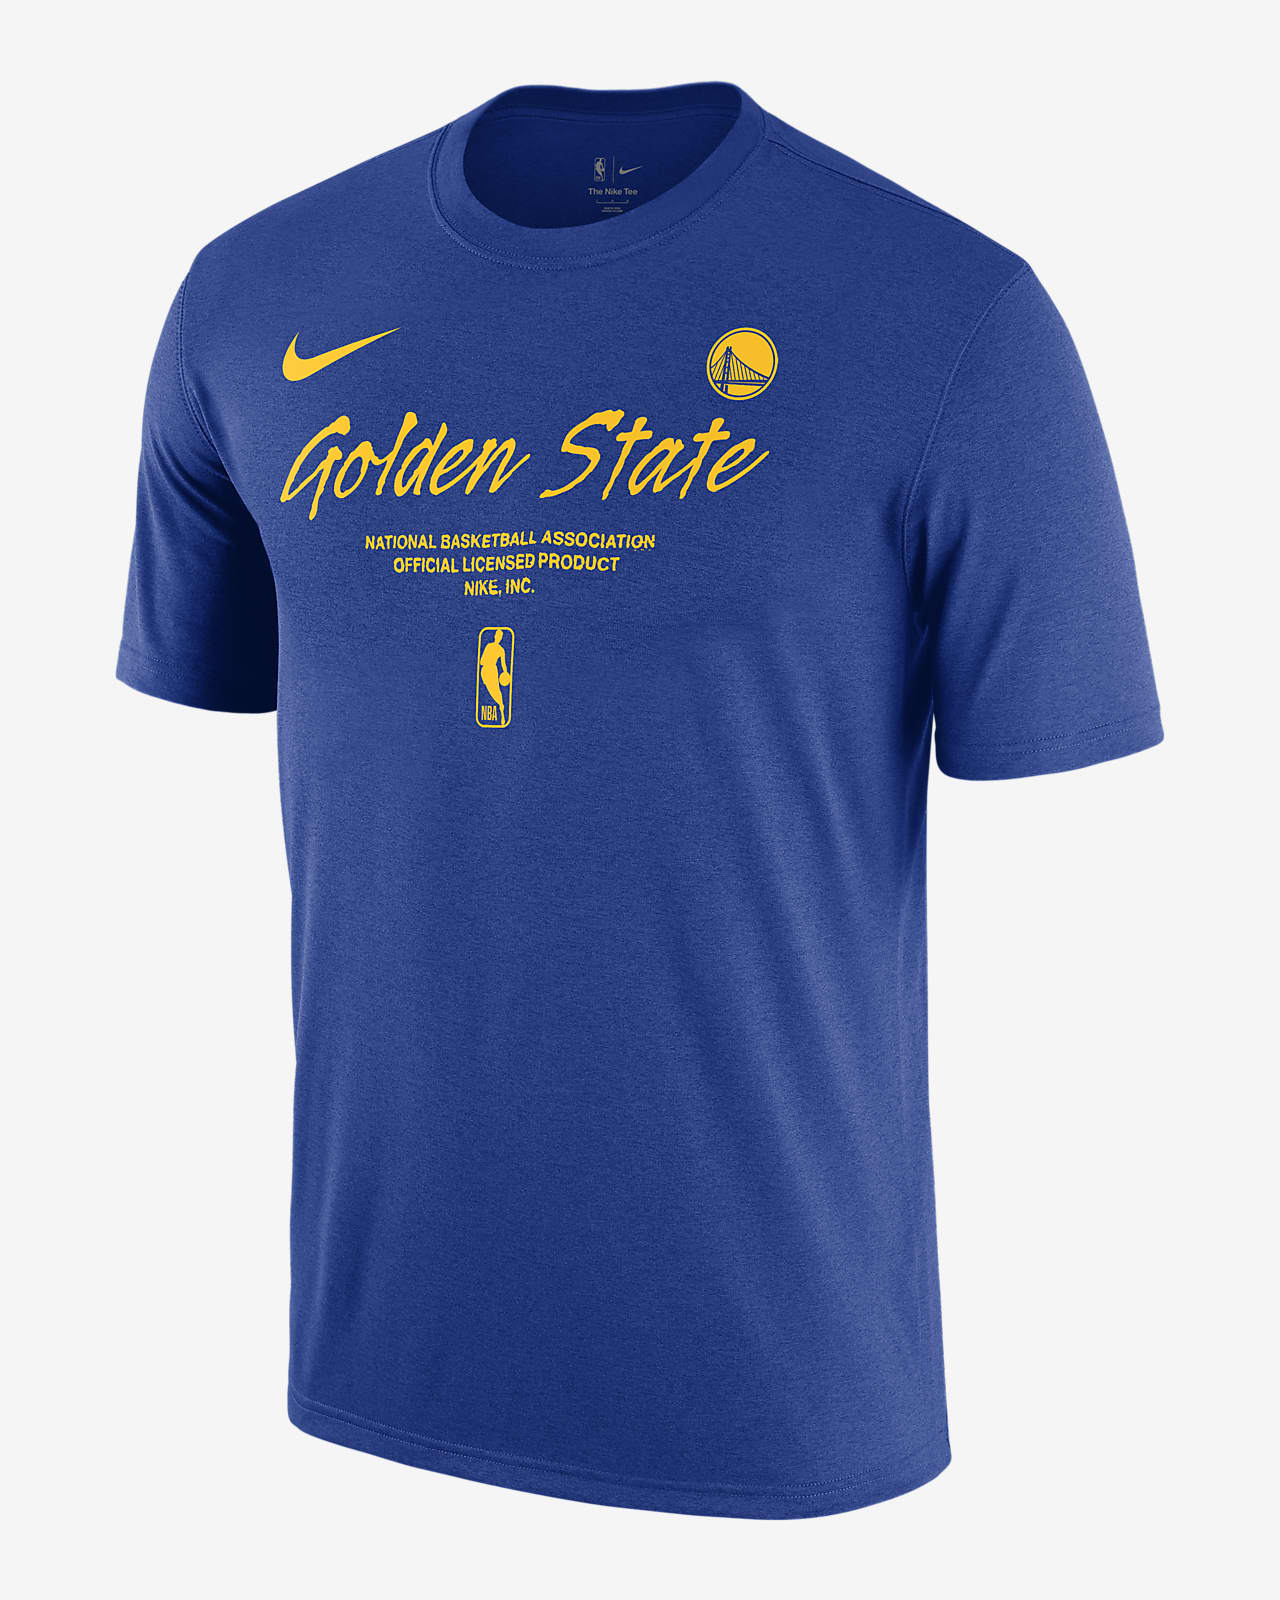 golden state warriors basketball shirt